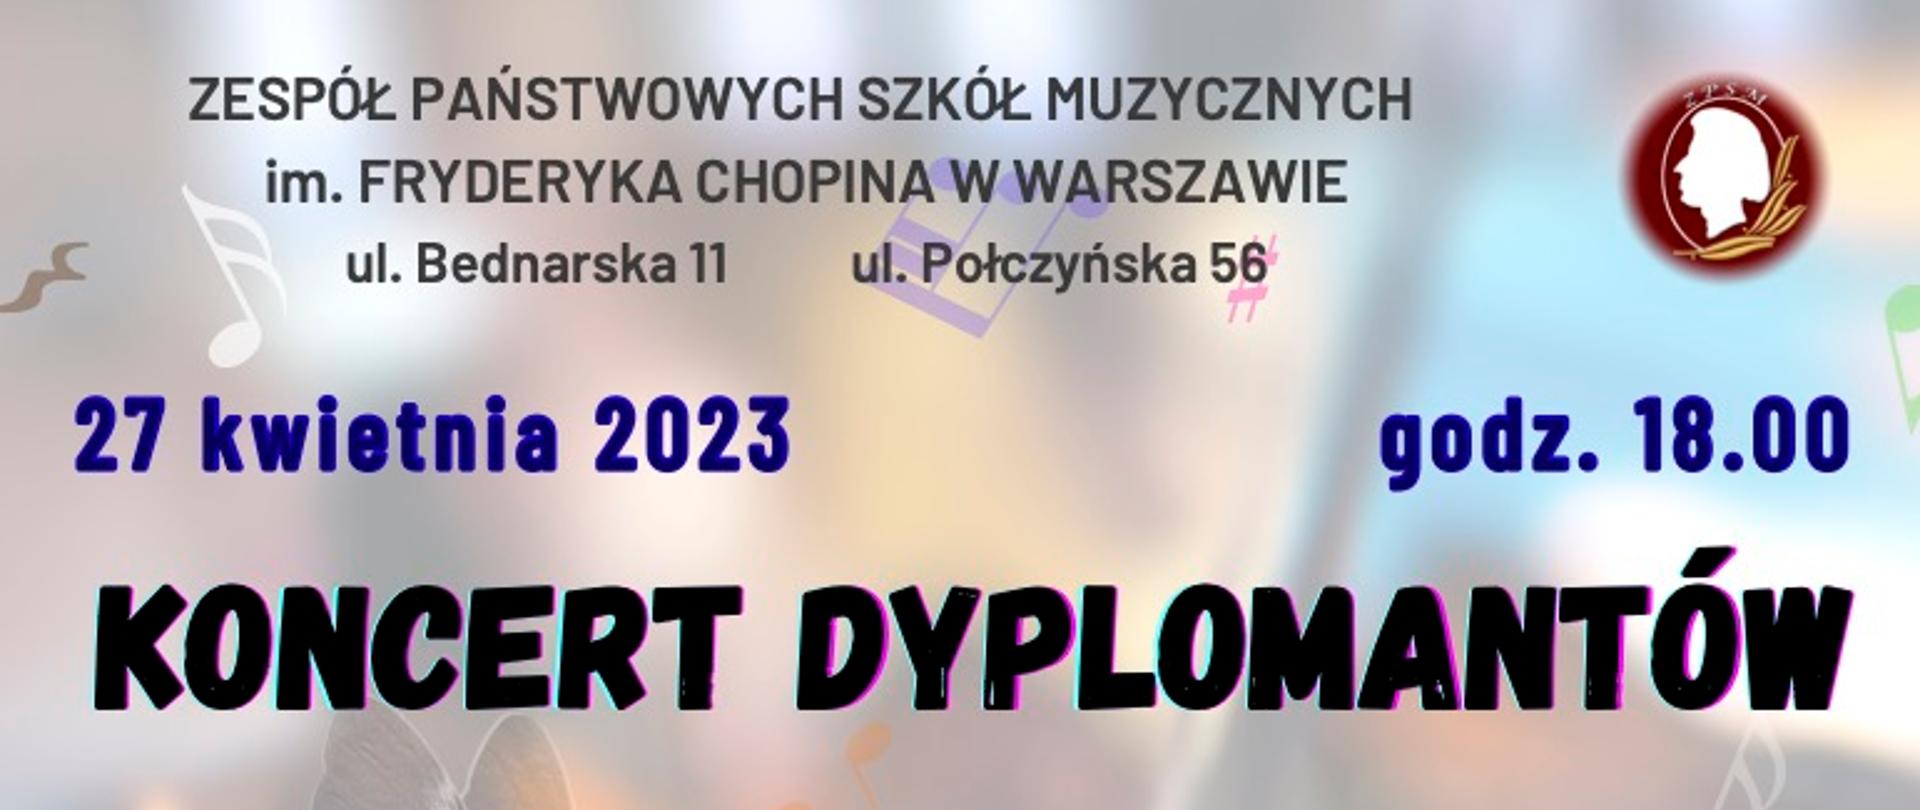 Afisz Koncertu Dyplomantów